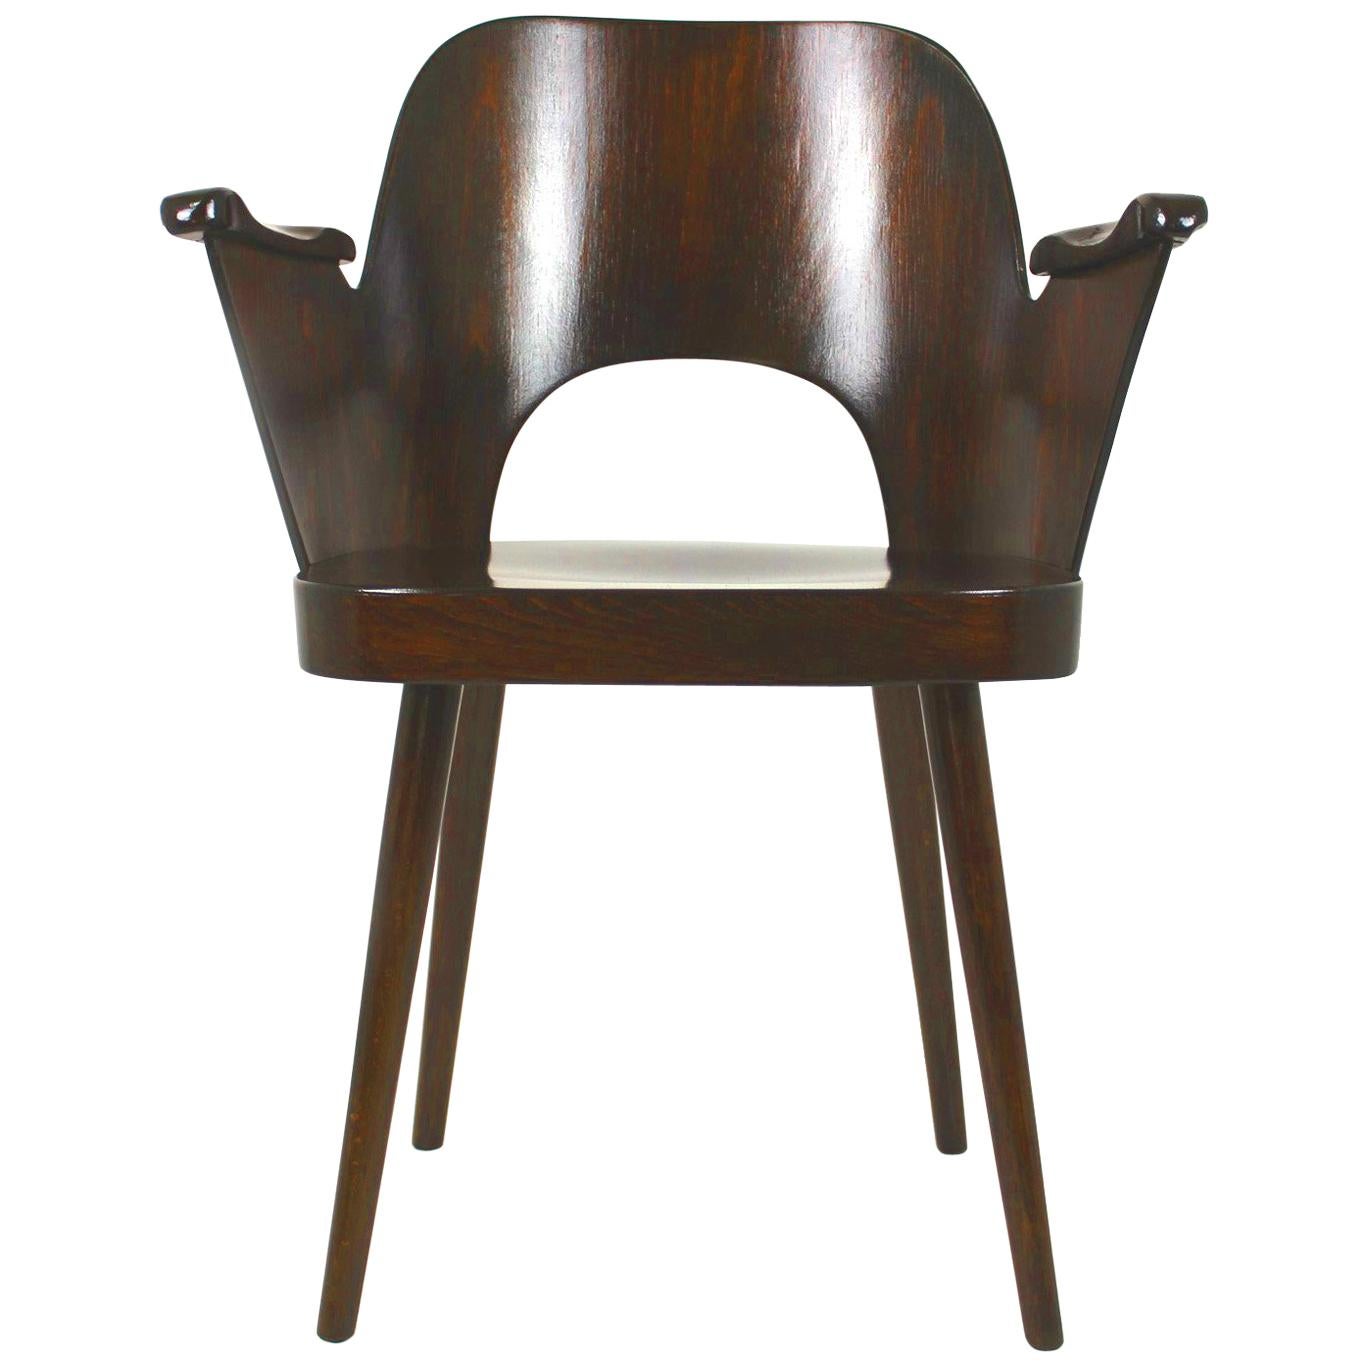 Wooden Armchair by Lubomír Hofmann for Ton, 1950s